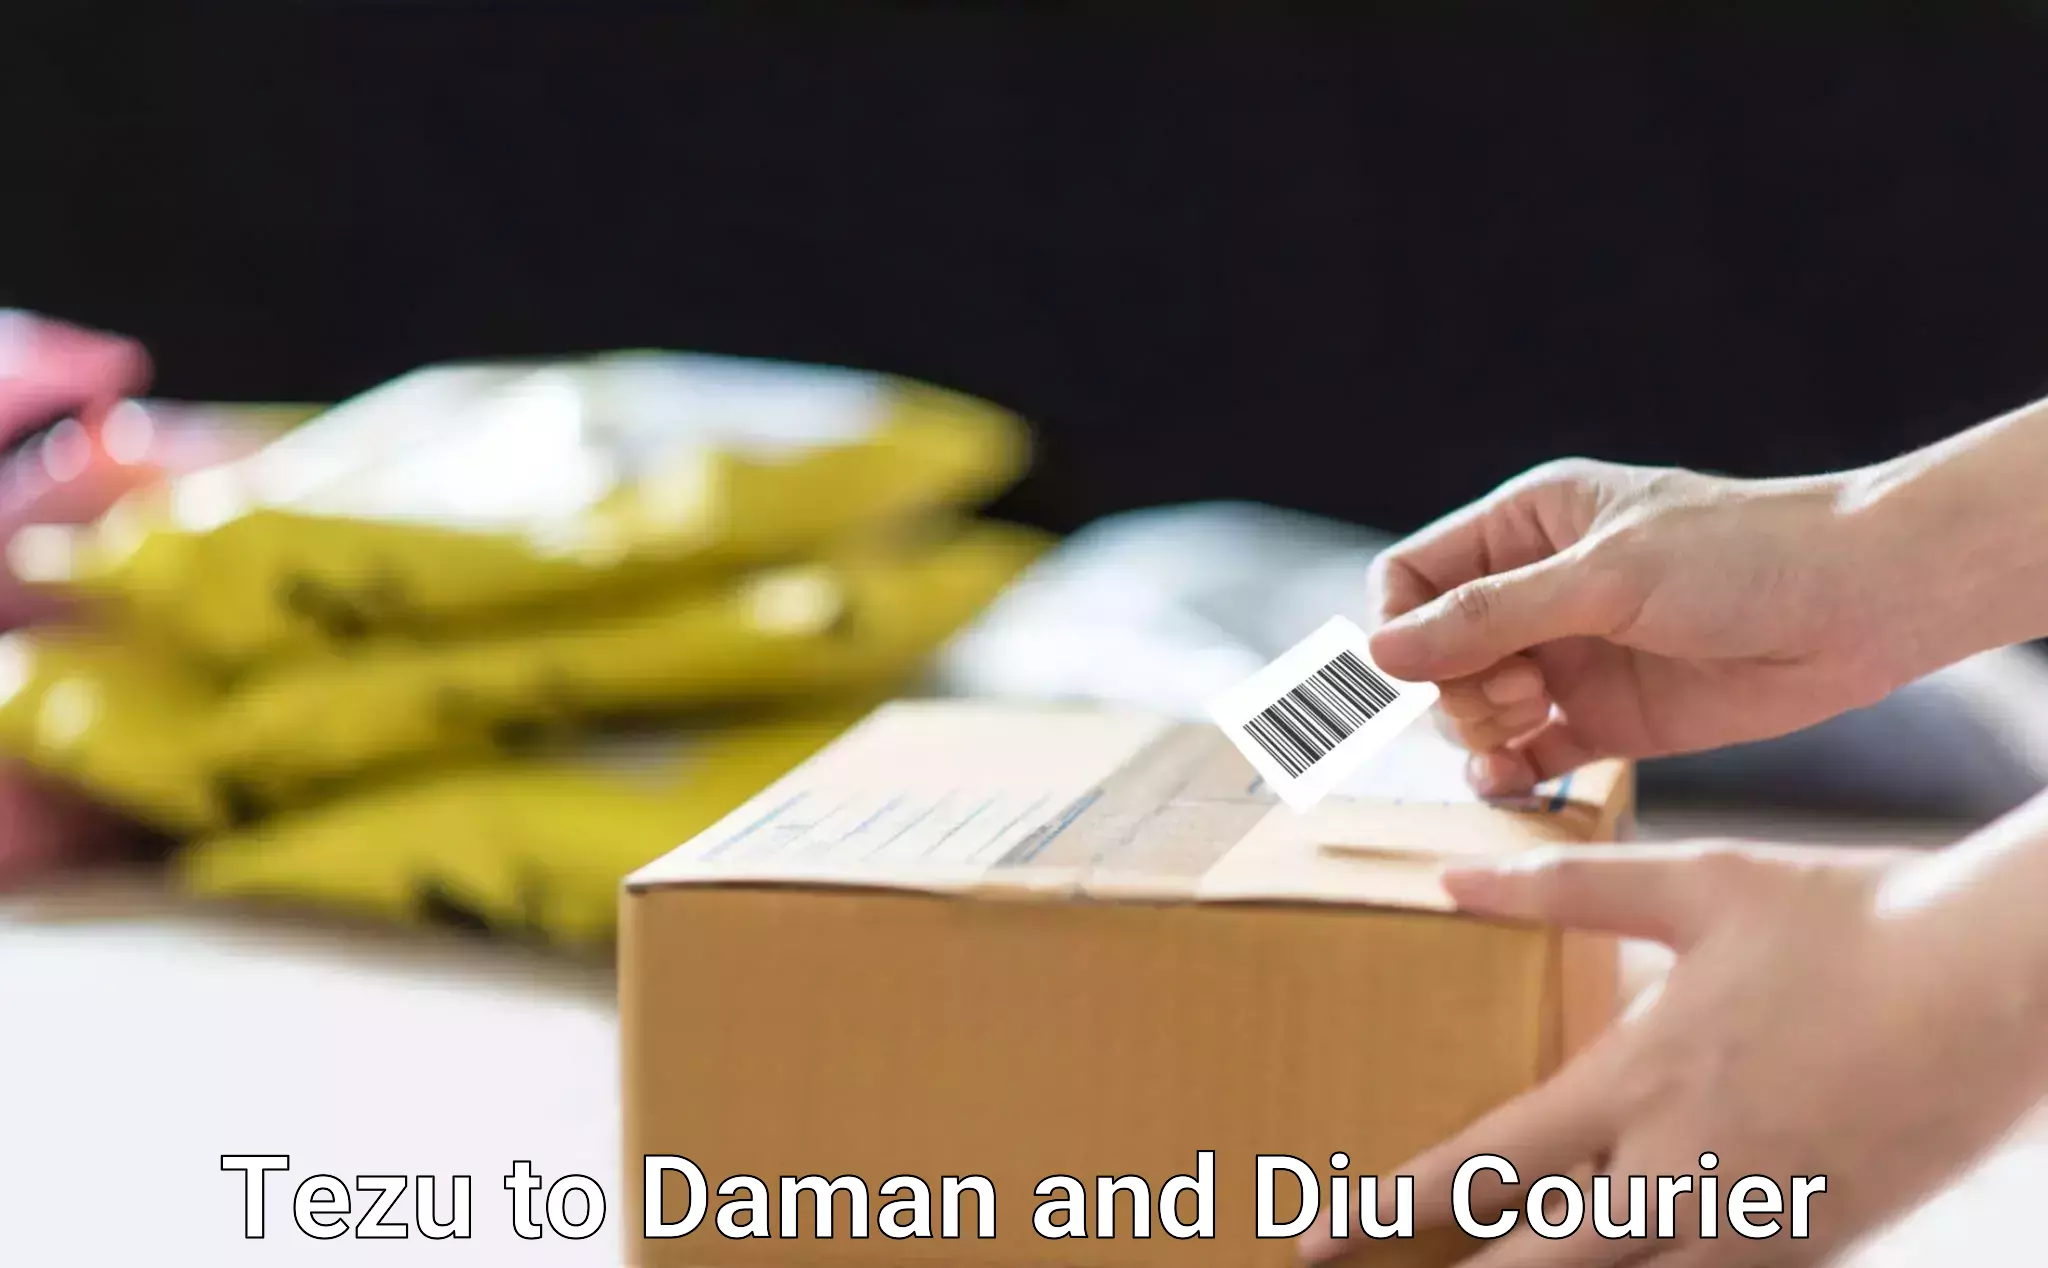 High-efficiency logistics Tezu to Daman and Diu